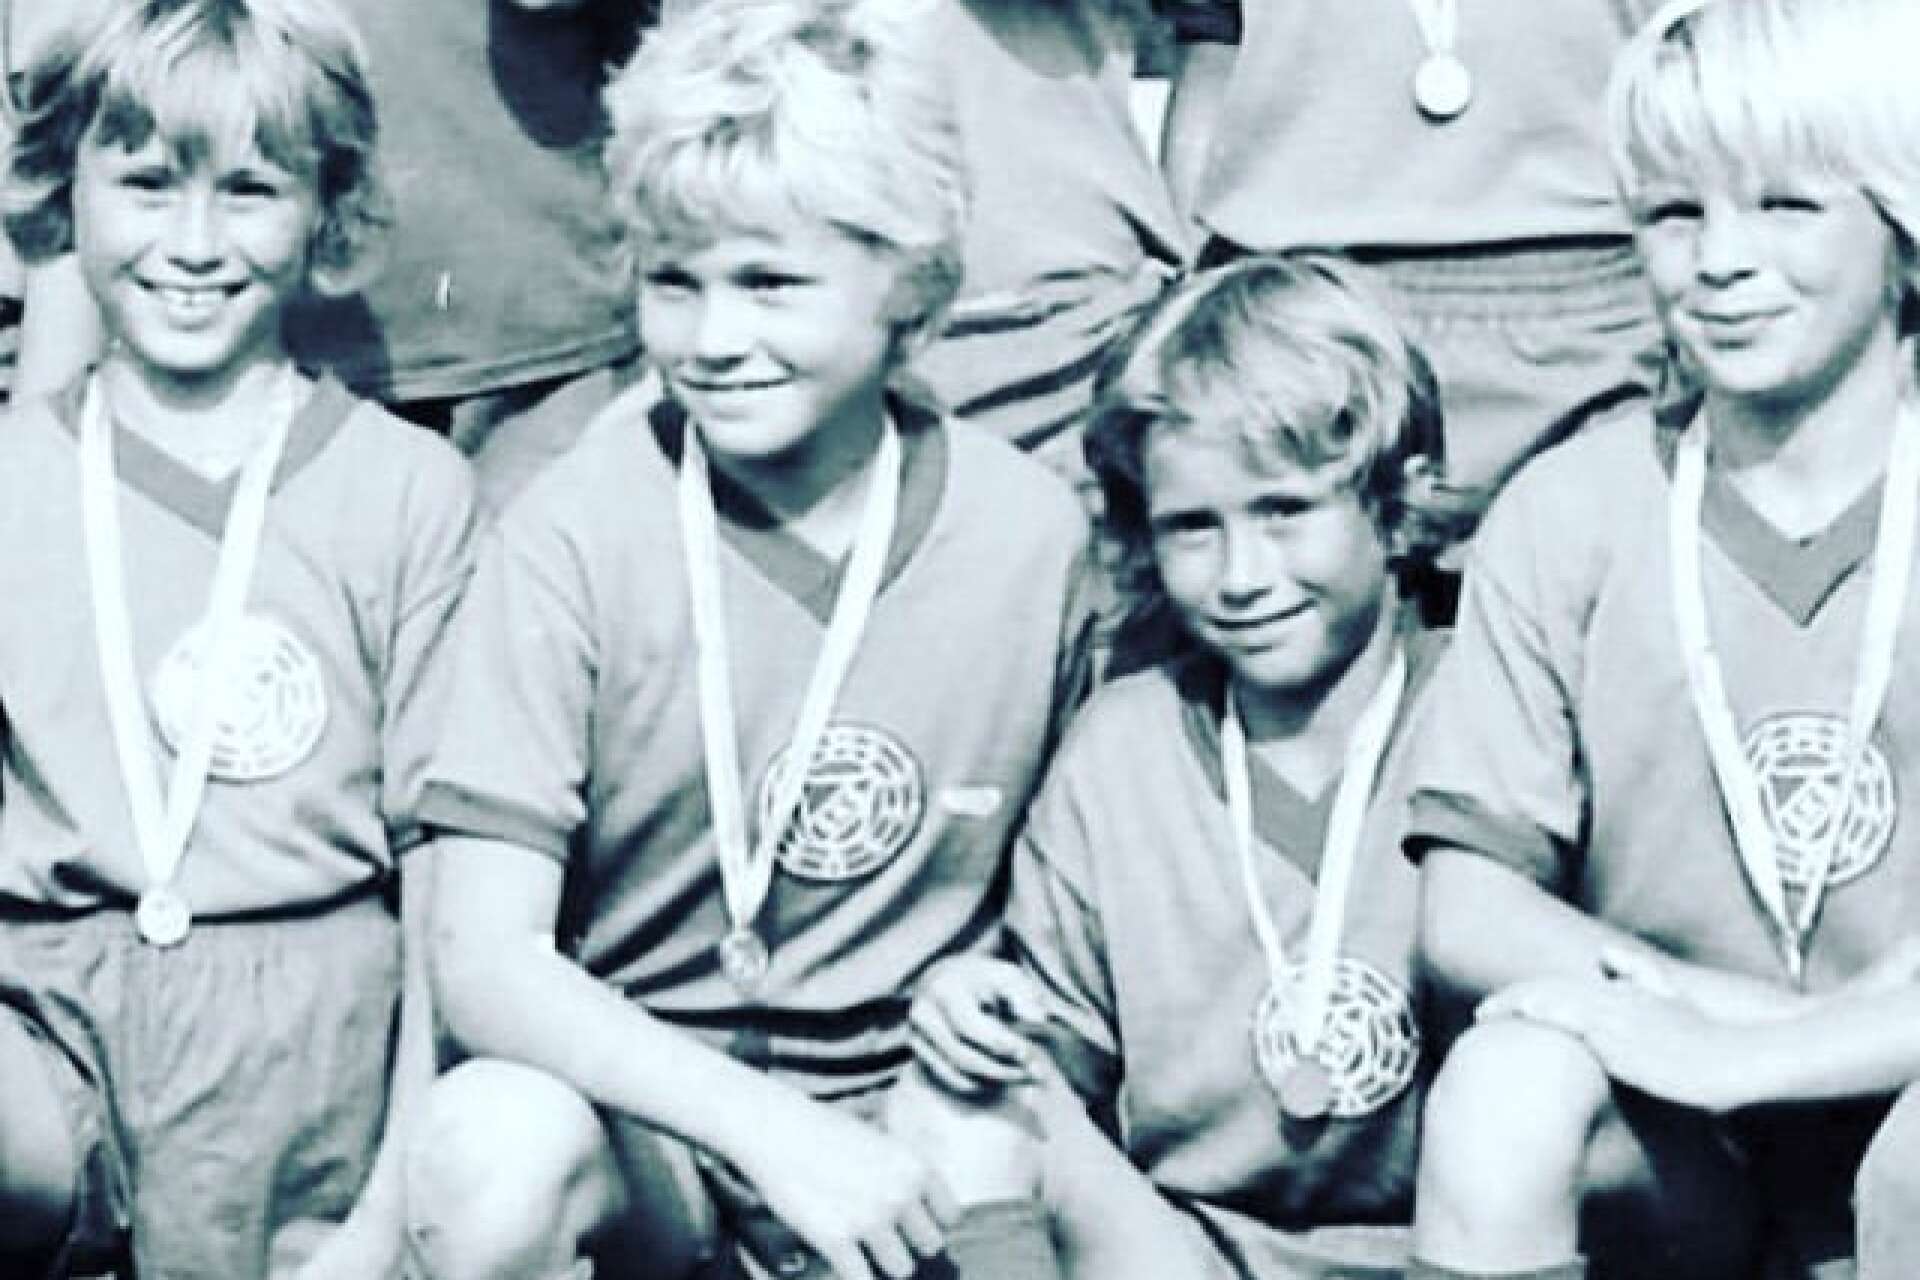 På fotbollsplanen visste bröderna alltid åt vilket håll den andre skulle springa, som en ren instinkt. På bilden är även barndomsvännerna Niklas Aronsson och Fredrik Englund.